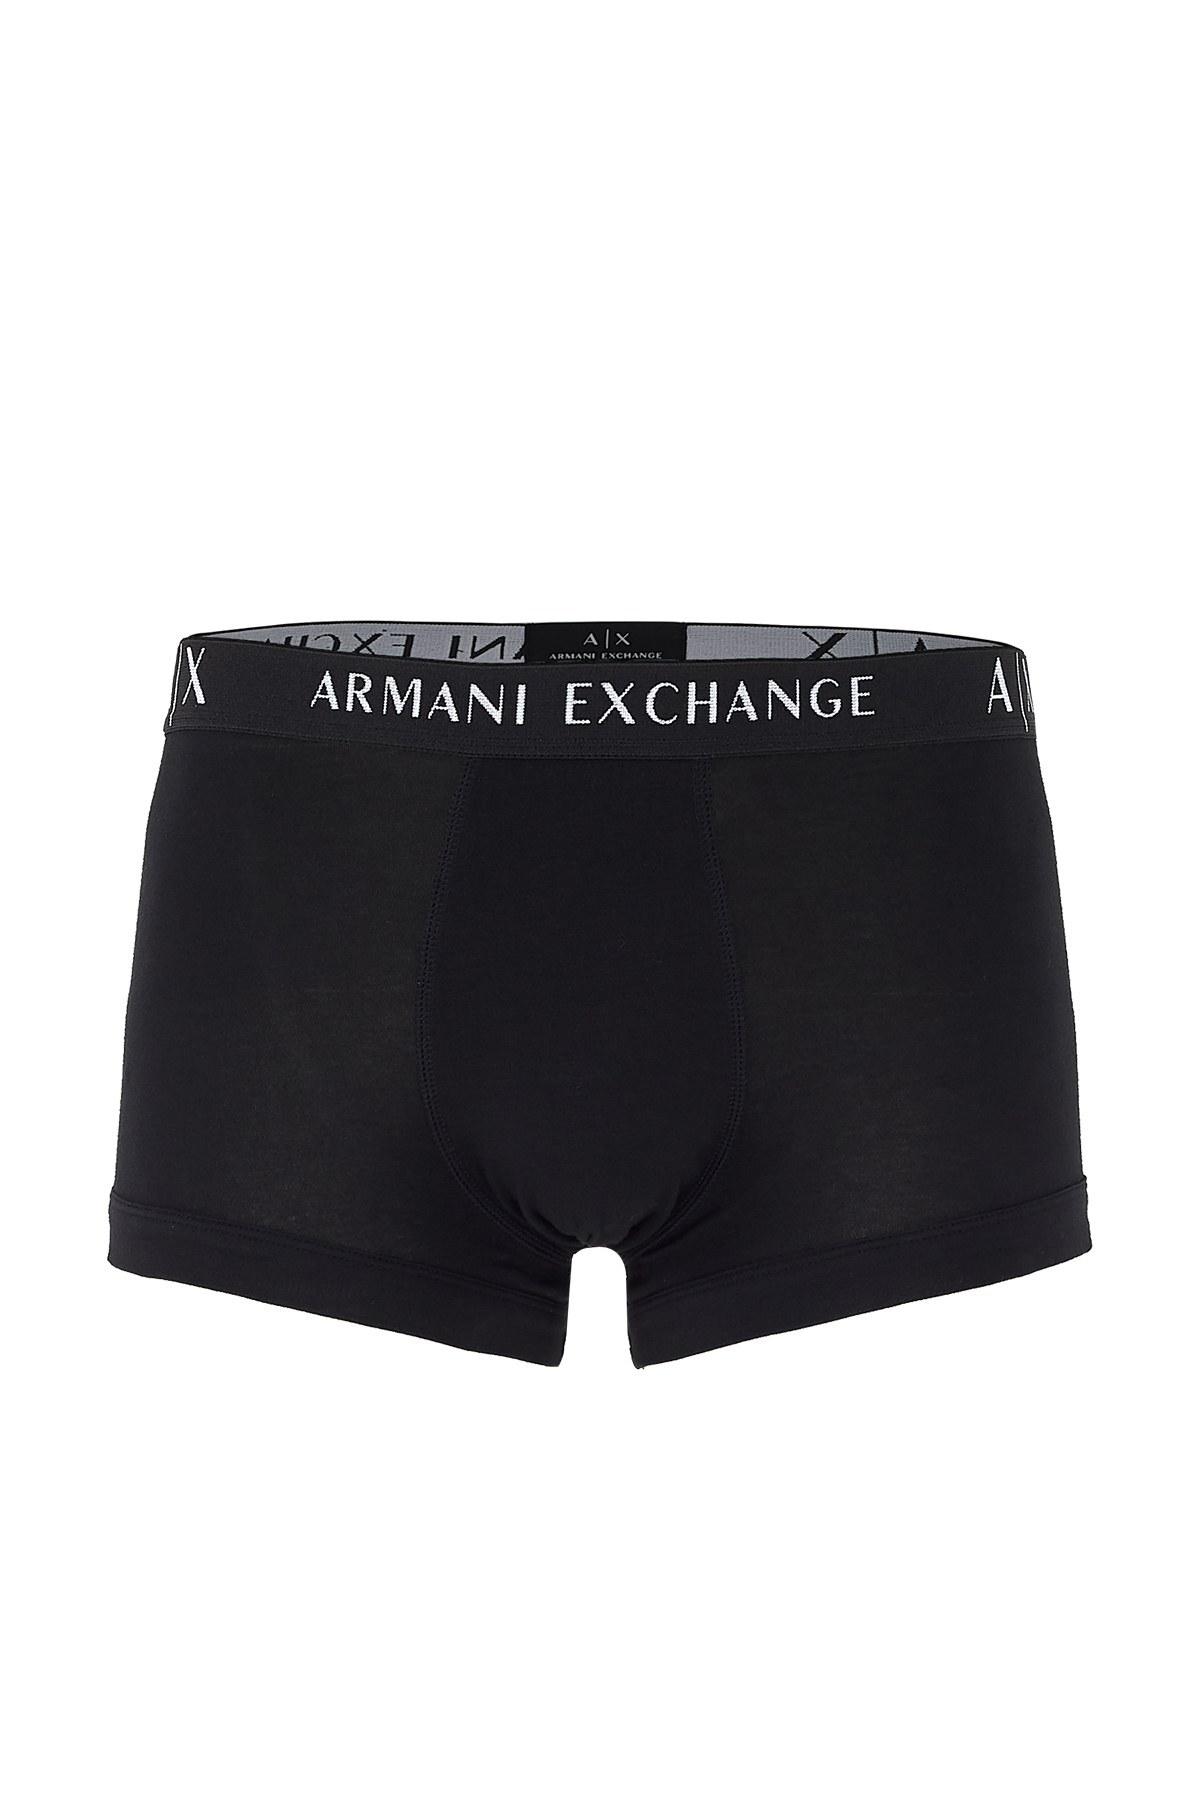 Armani Exchange 3 Pack Erkek Boxer 956000 CC282 49920 SİYAH-BEYAZ-GRİ